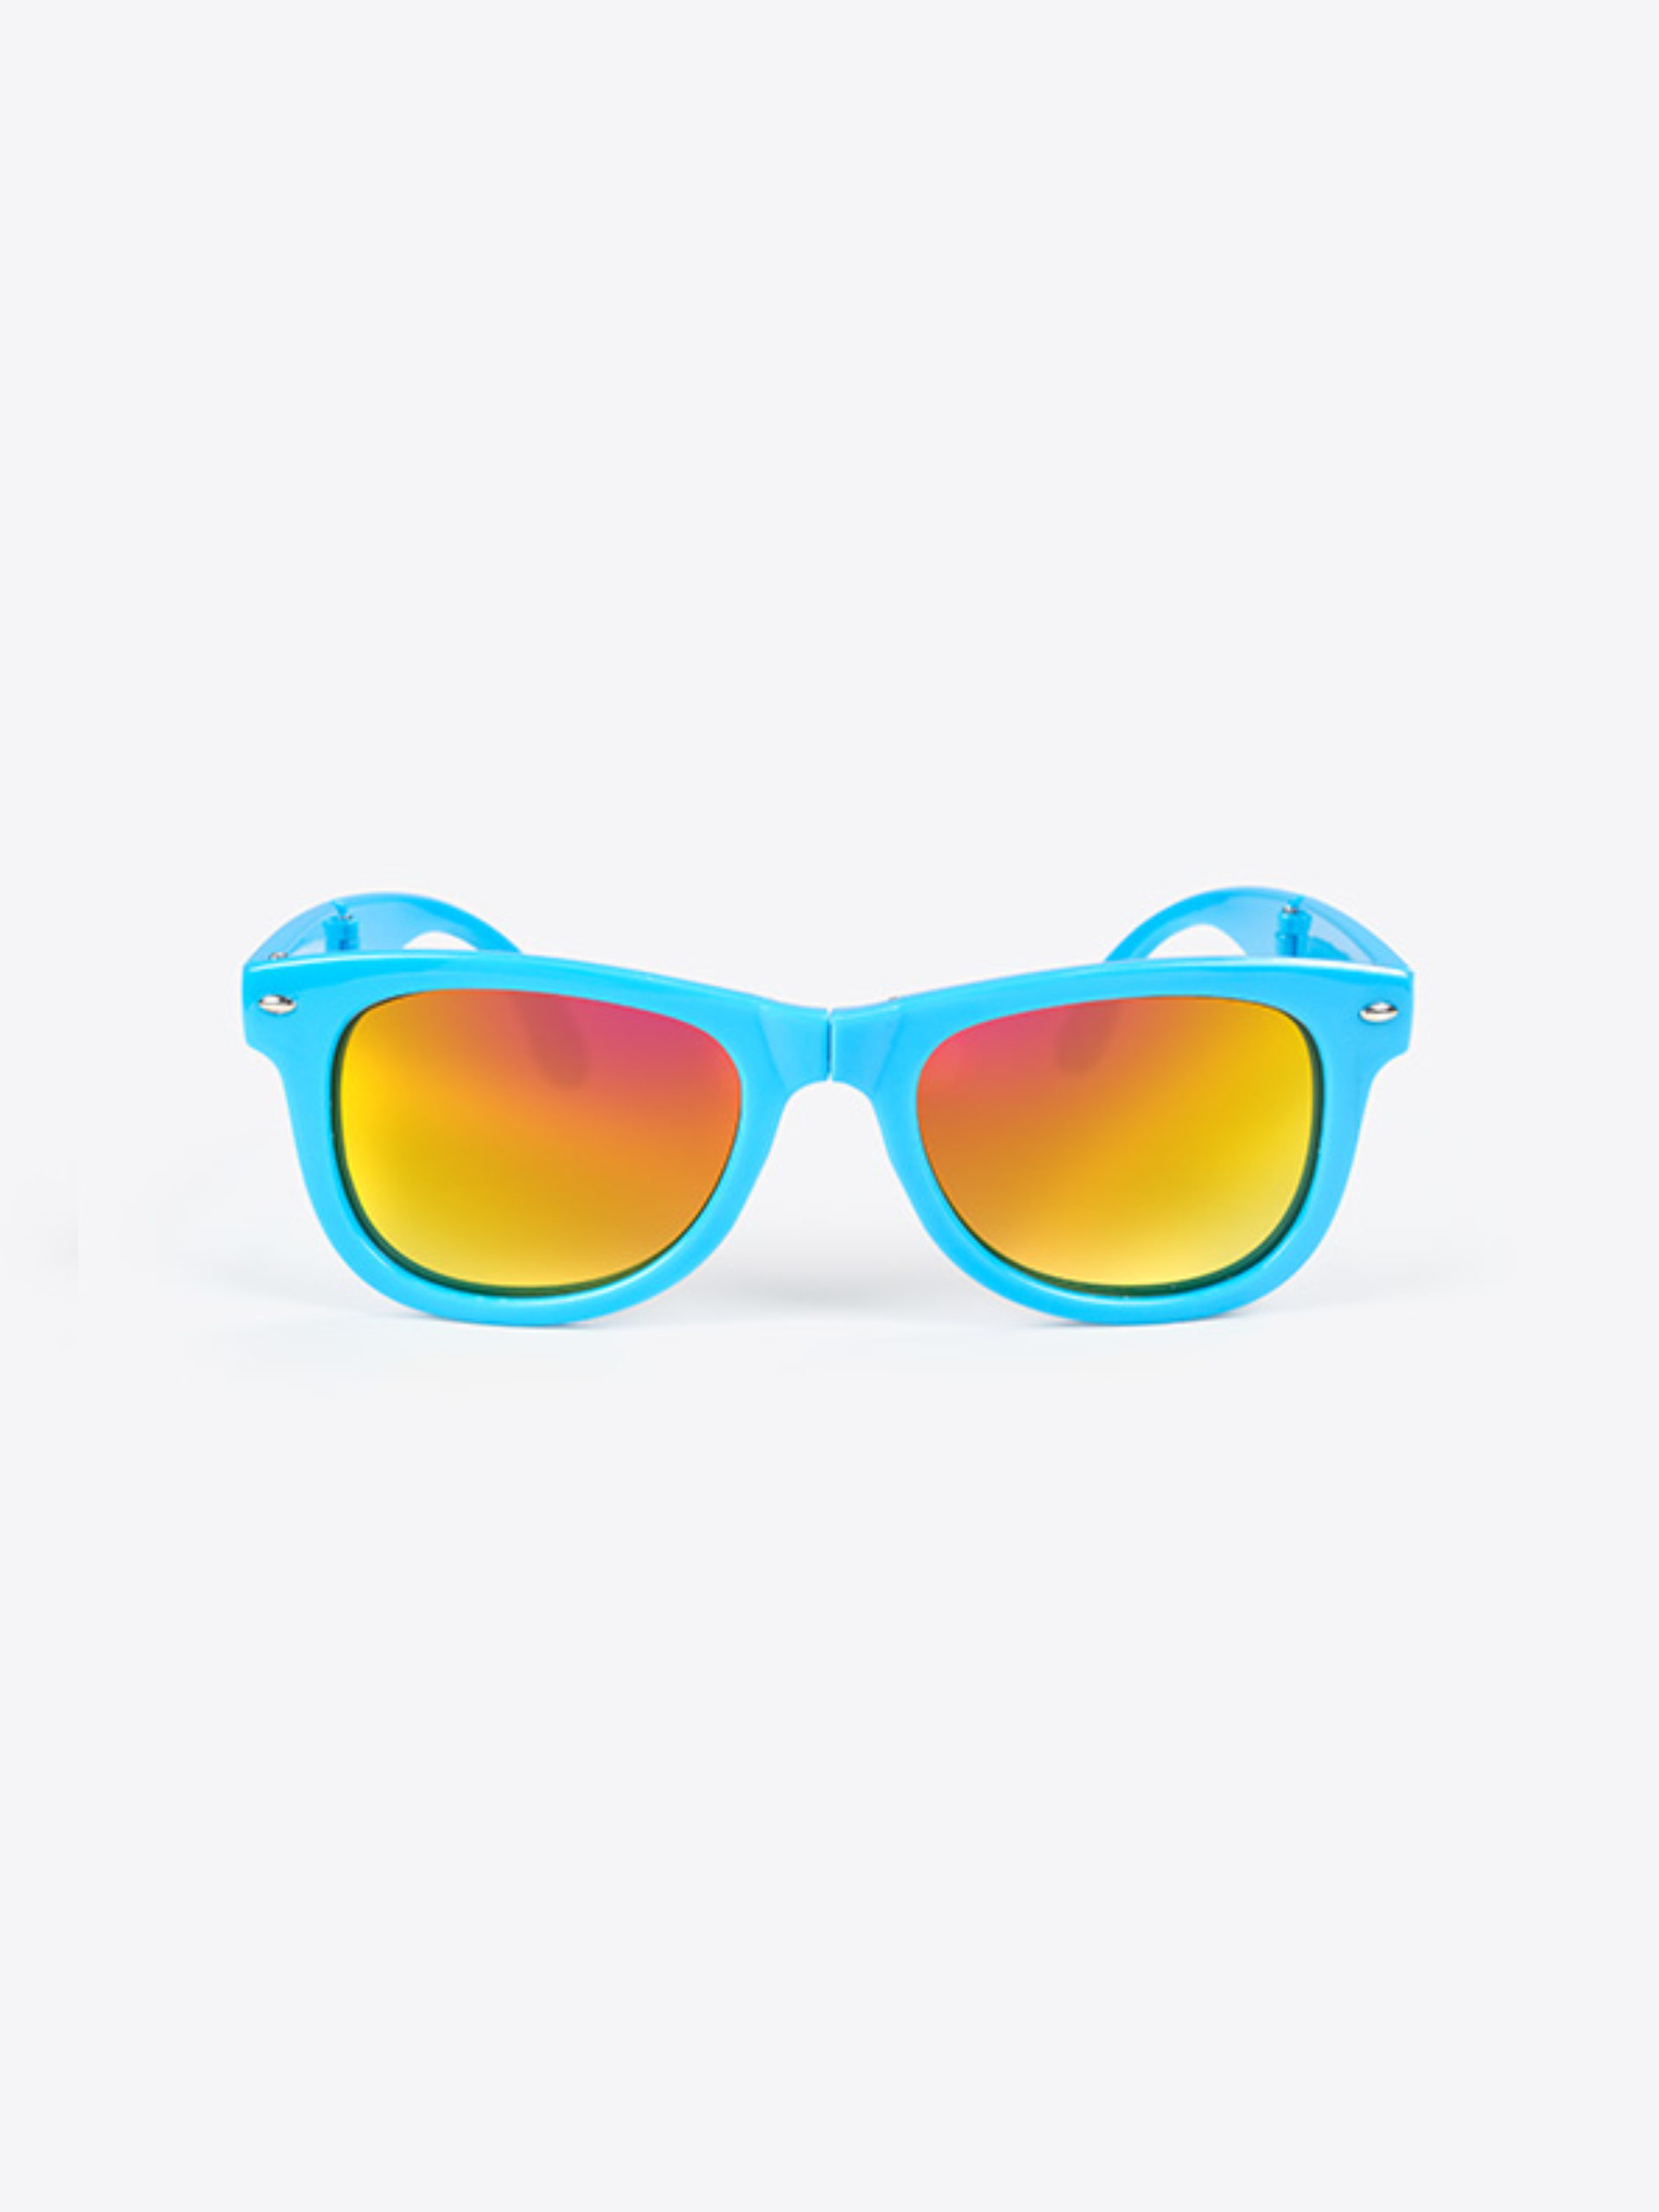 Faltbare Sonnenbrille Mit Werbedruck Bedrucken